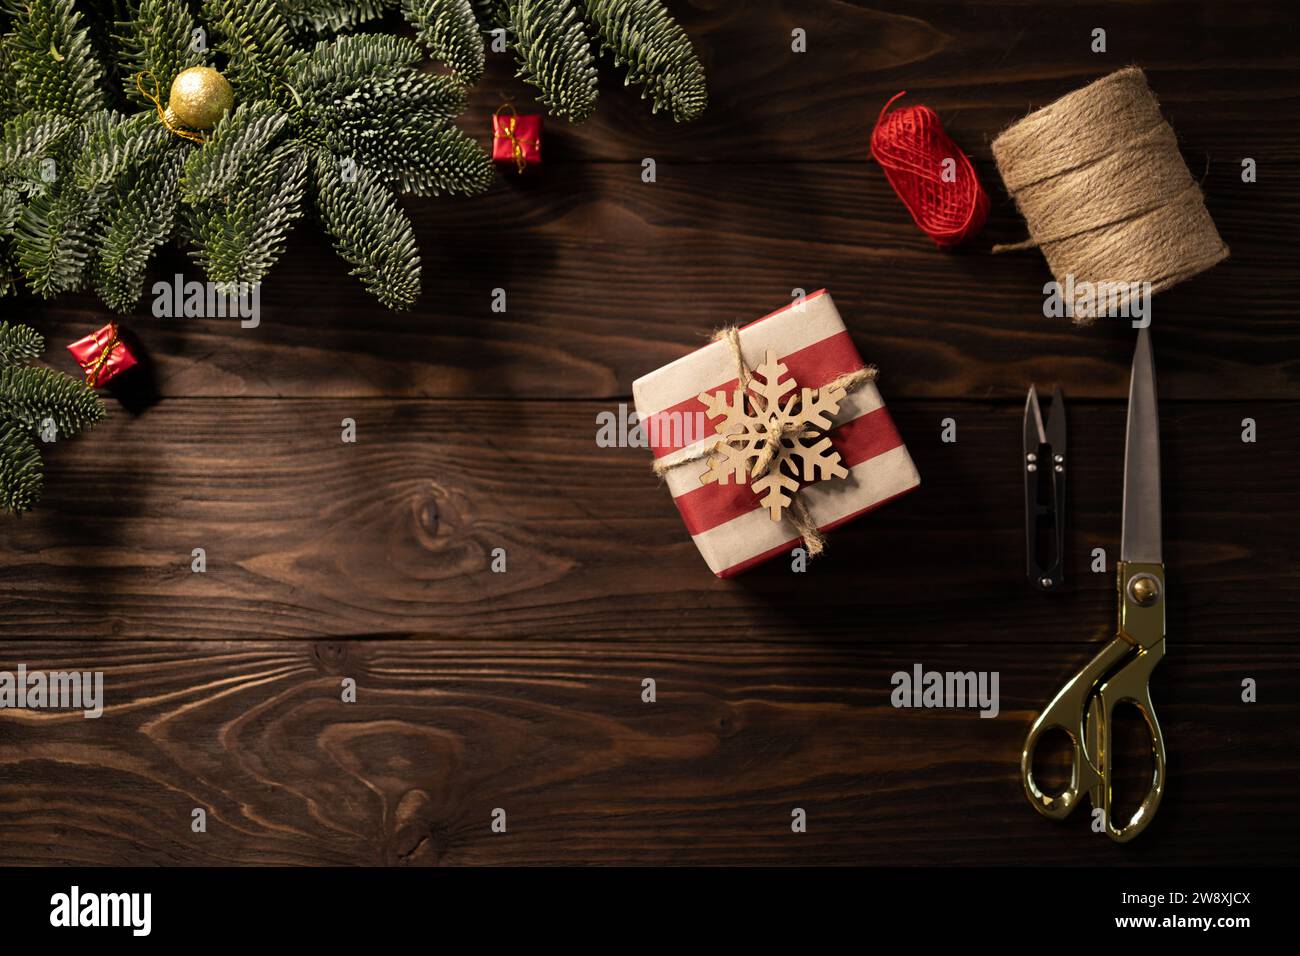 Vue de dessus du cadeau de Noël enveloppé dans du papier artisanal rayé et décoré de flocon de neige en bois sur fond en bois encadré par des branches de sapin noble Banque D'Images